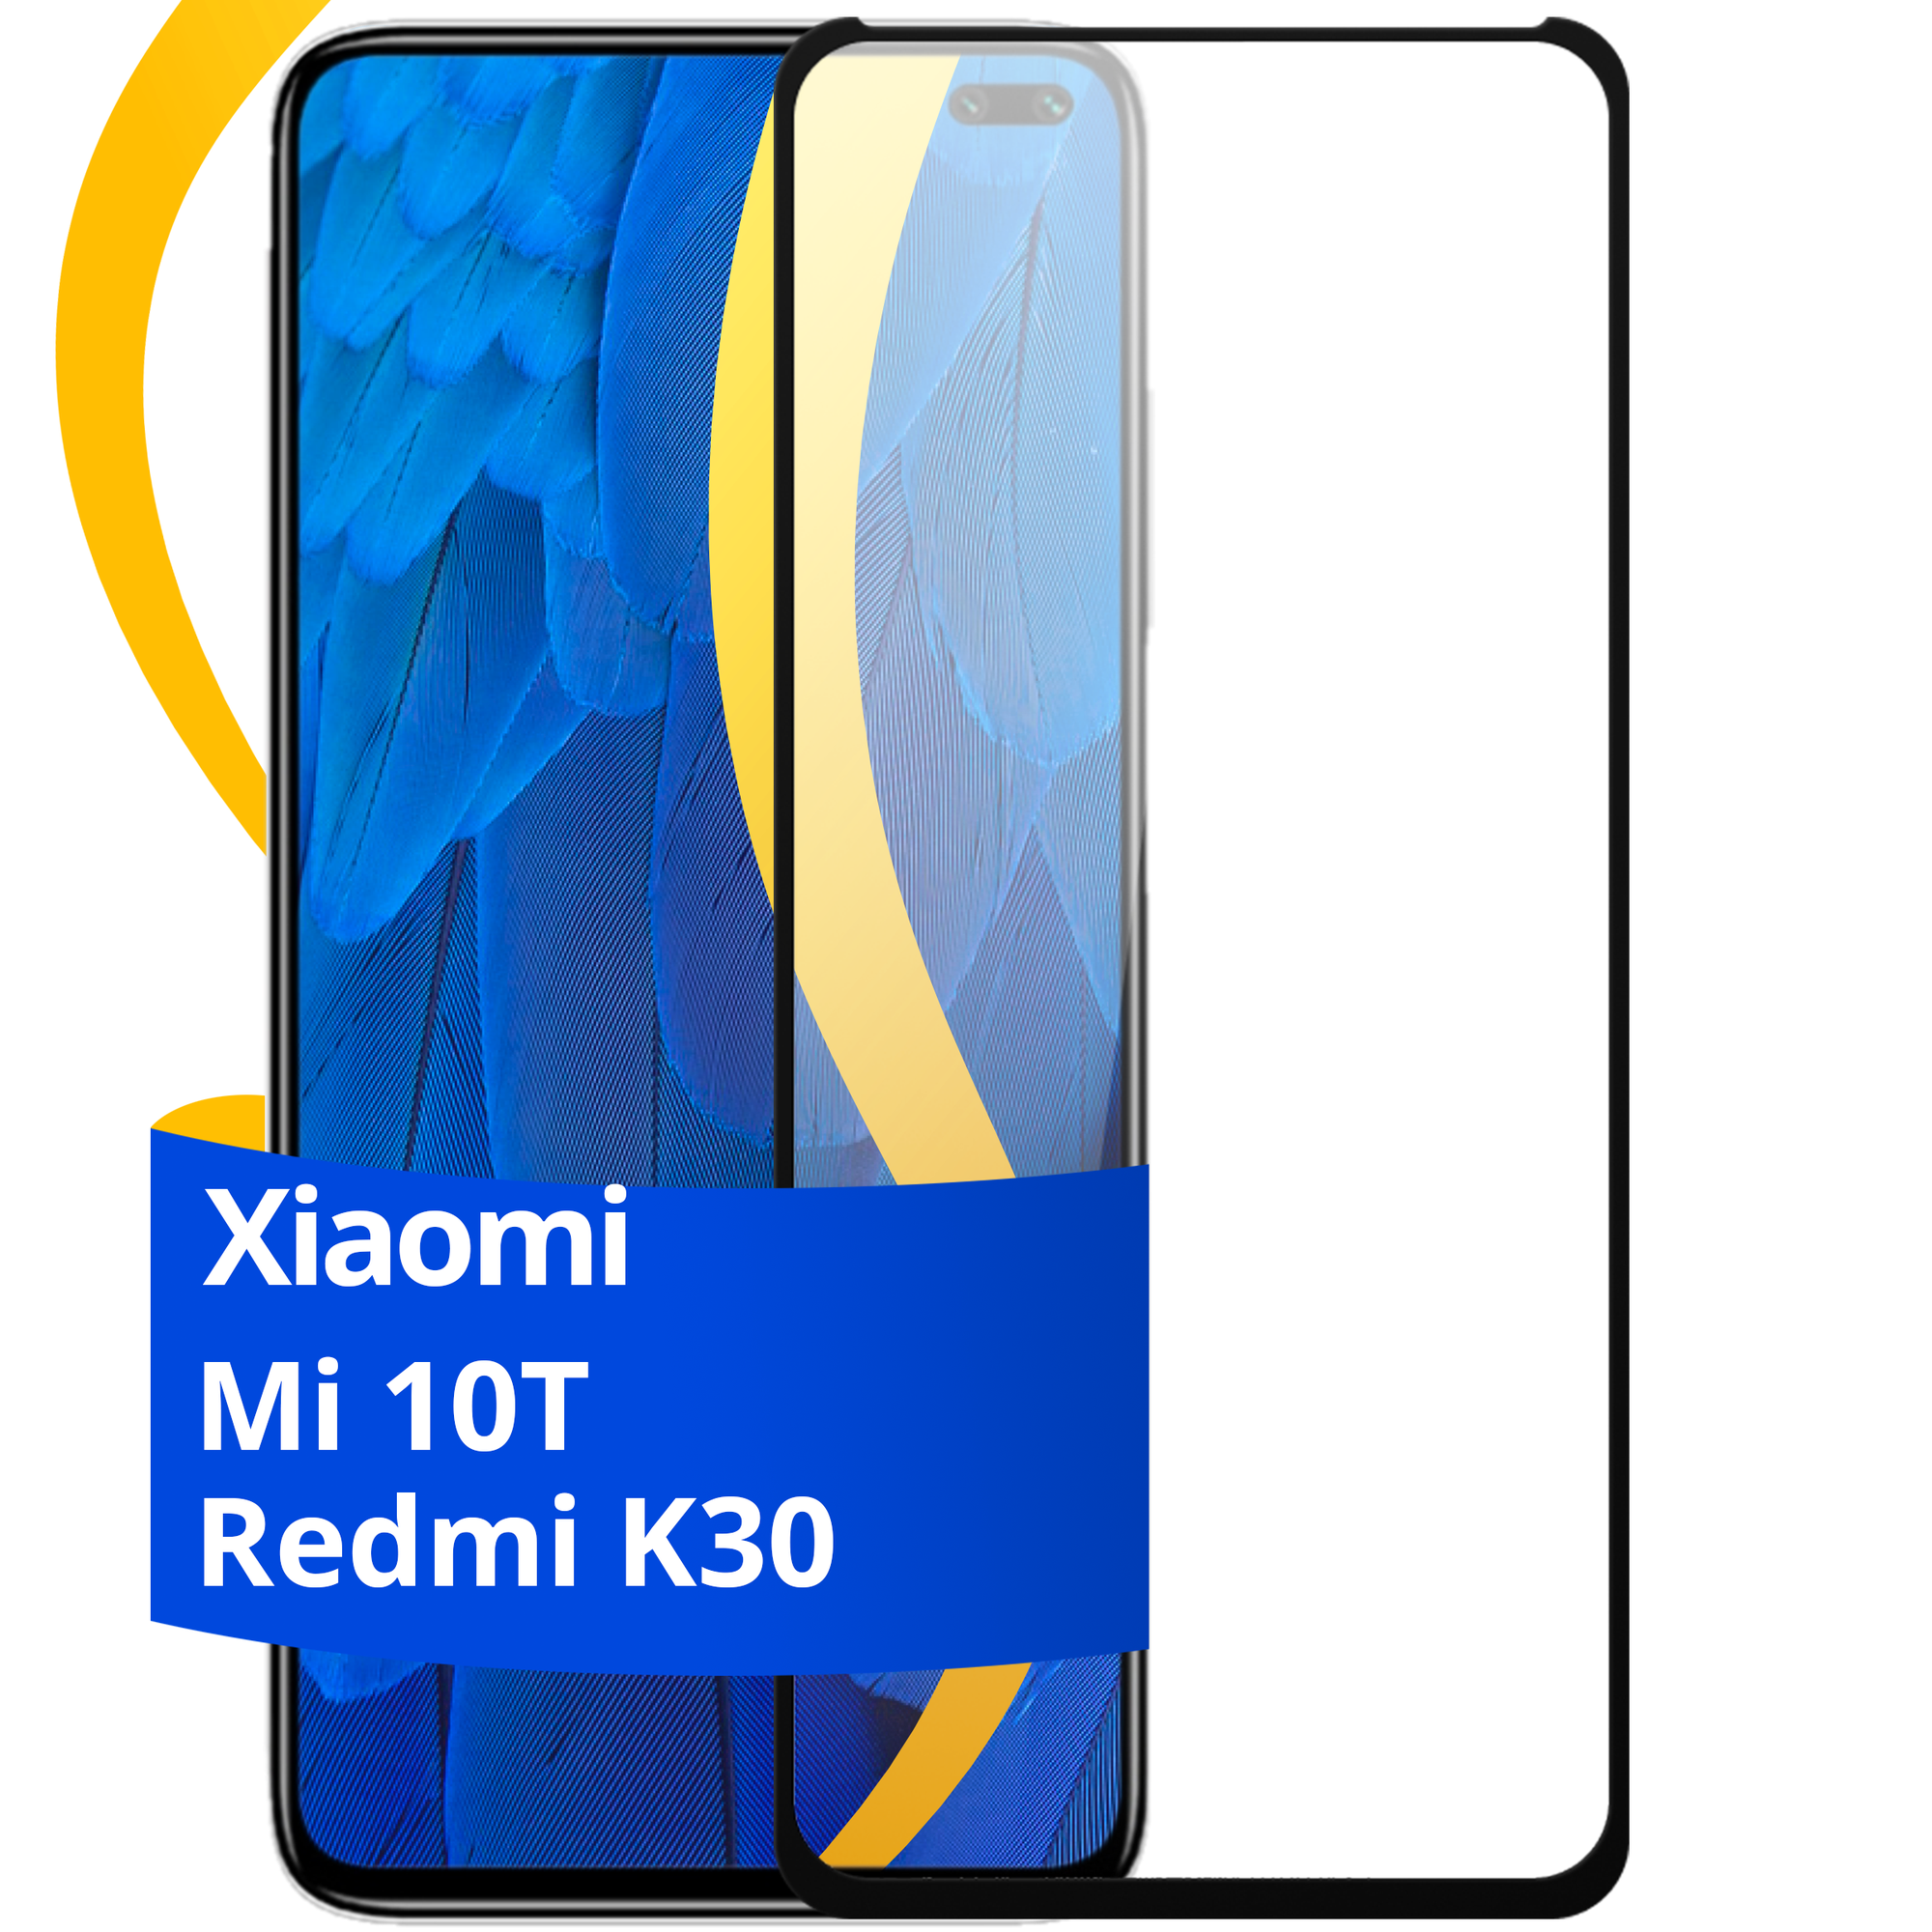 Комплект 2 шт защитное стекло для телефона Xiaomi Redmi K30 и Xiaomi Mi 10T / Набор противоударных стекол на смартфон Сяоми Редми К30 и Сяоми Ми 10Т